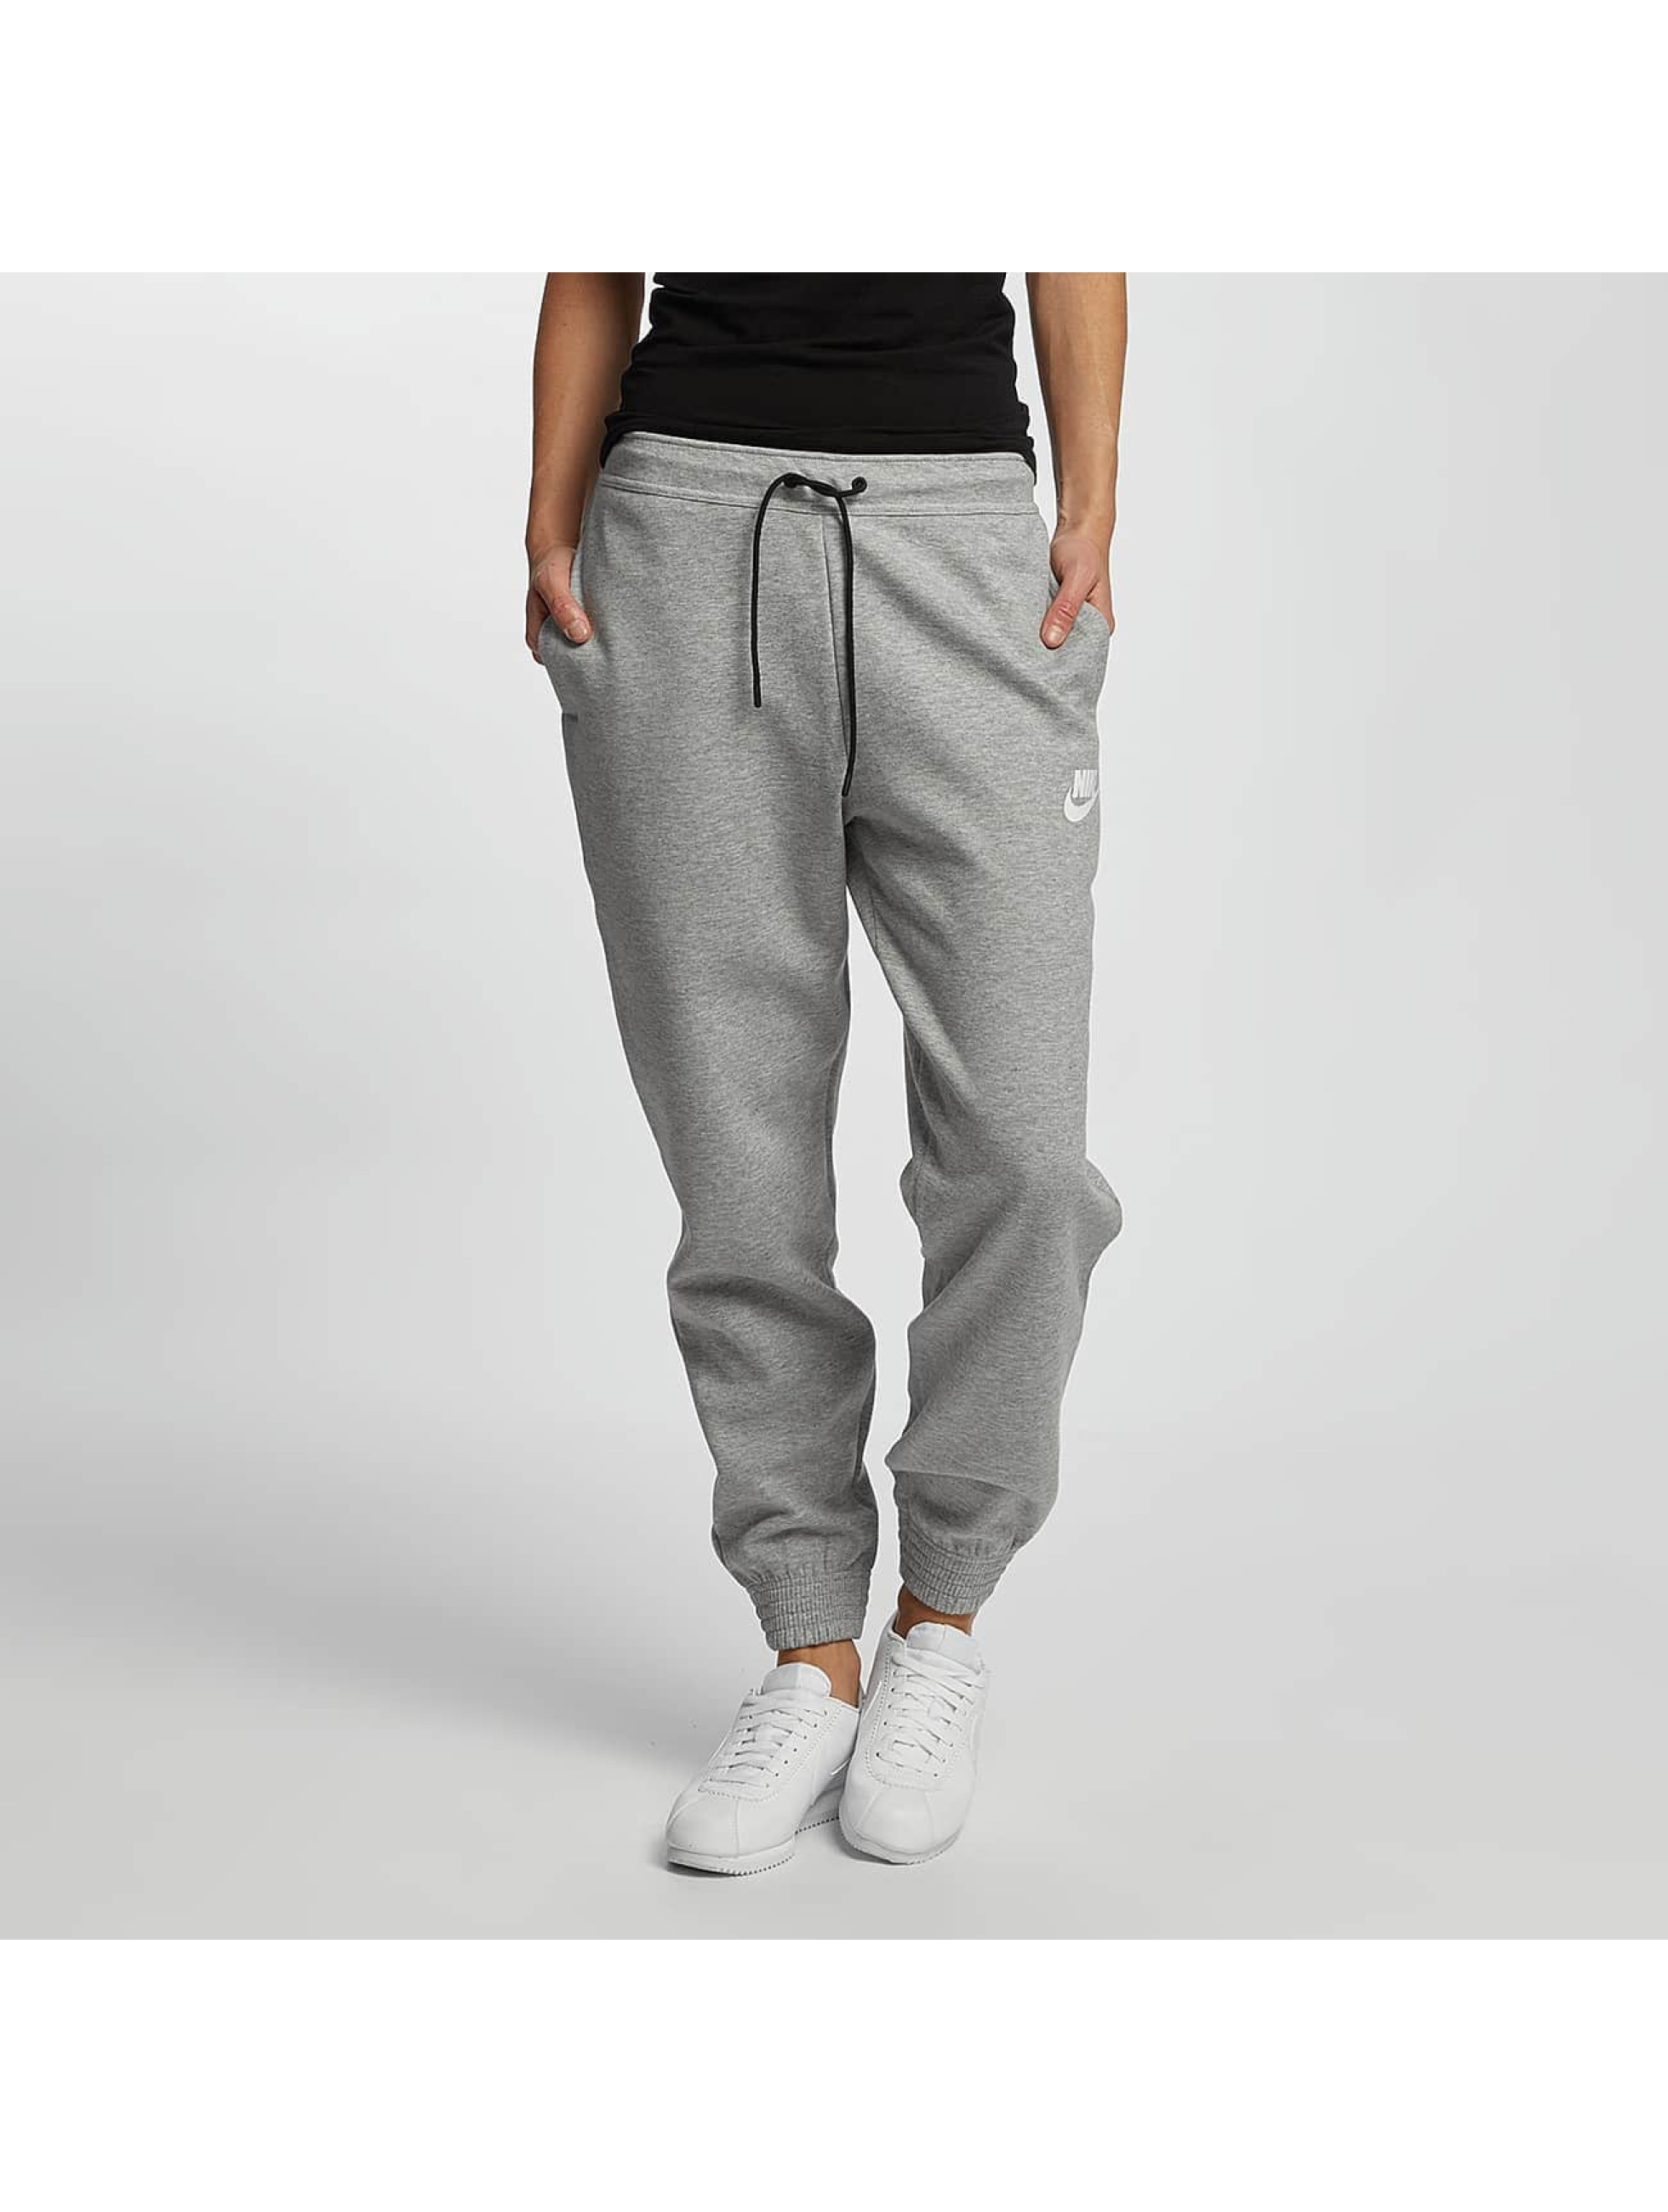 Nike Sportswear AV15 gris Jogging femme